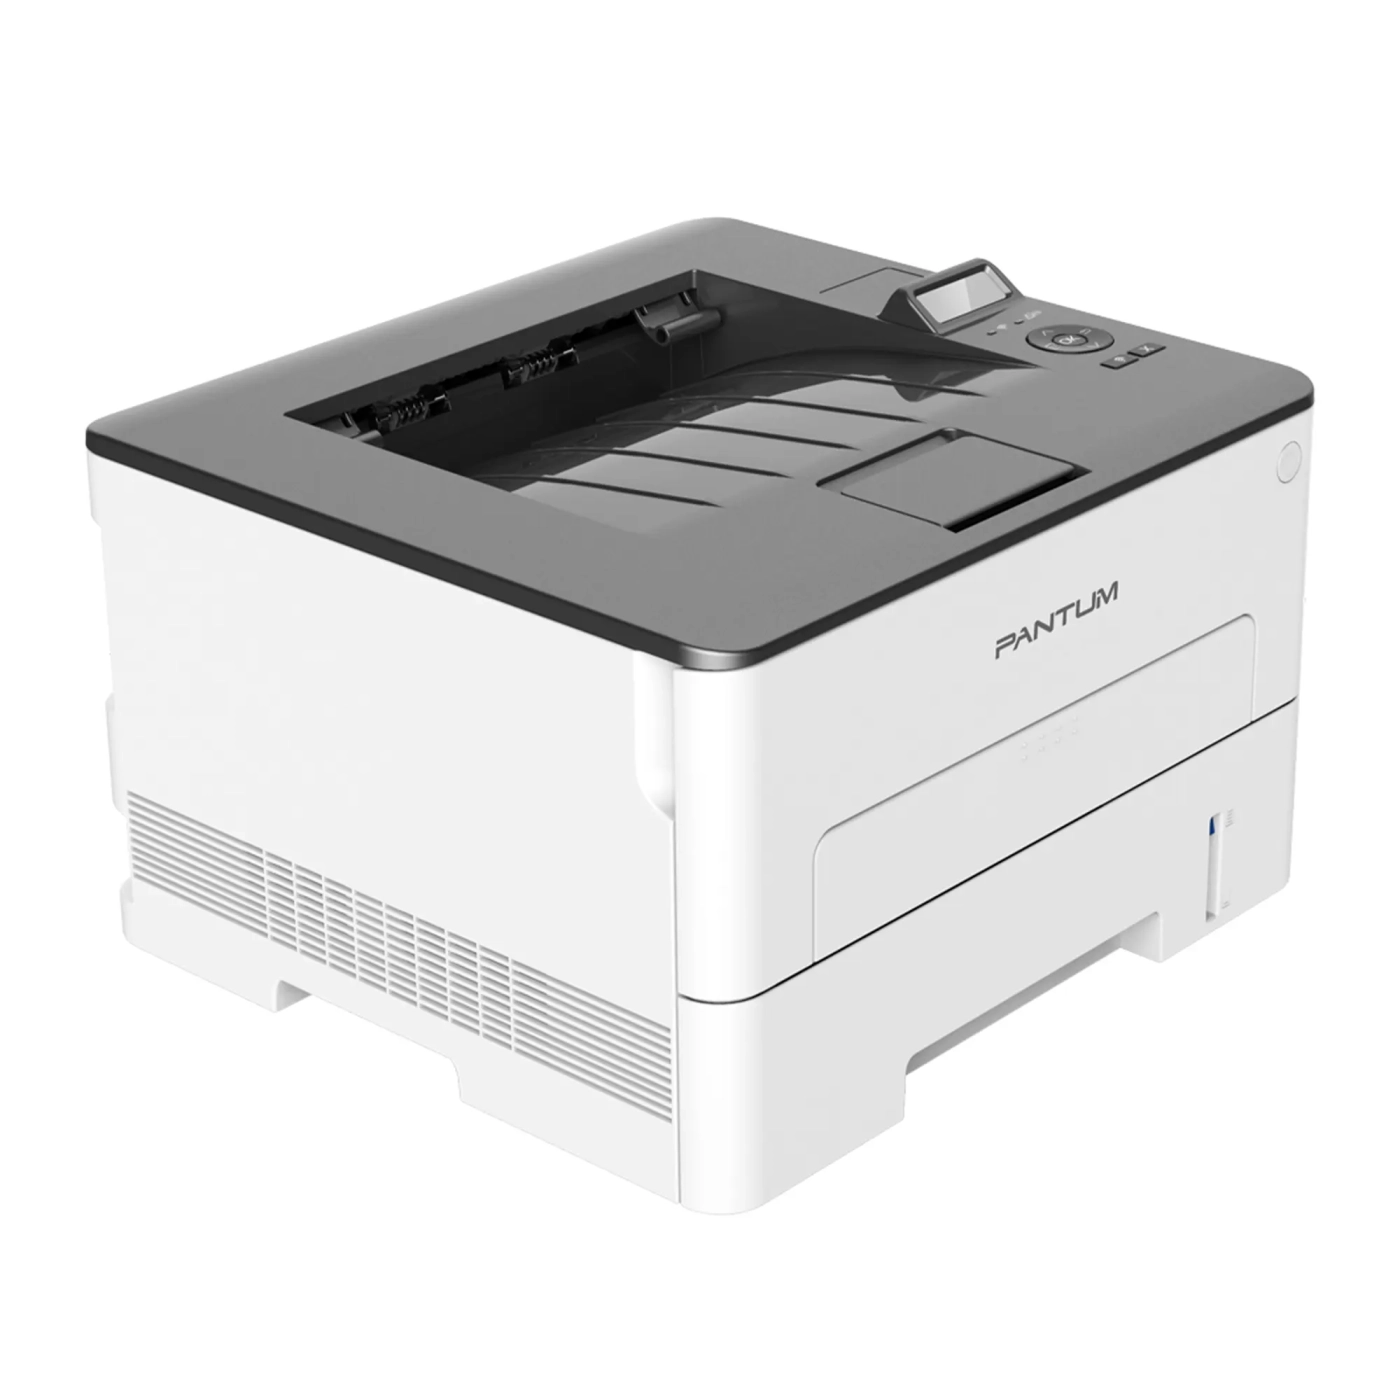 Купить Лазерный принтер Pantum P3300DN - фото 4